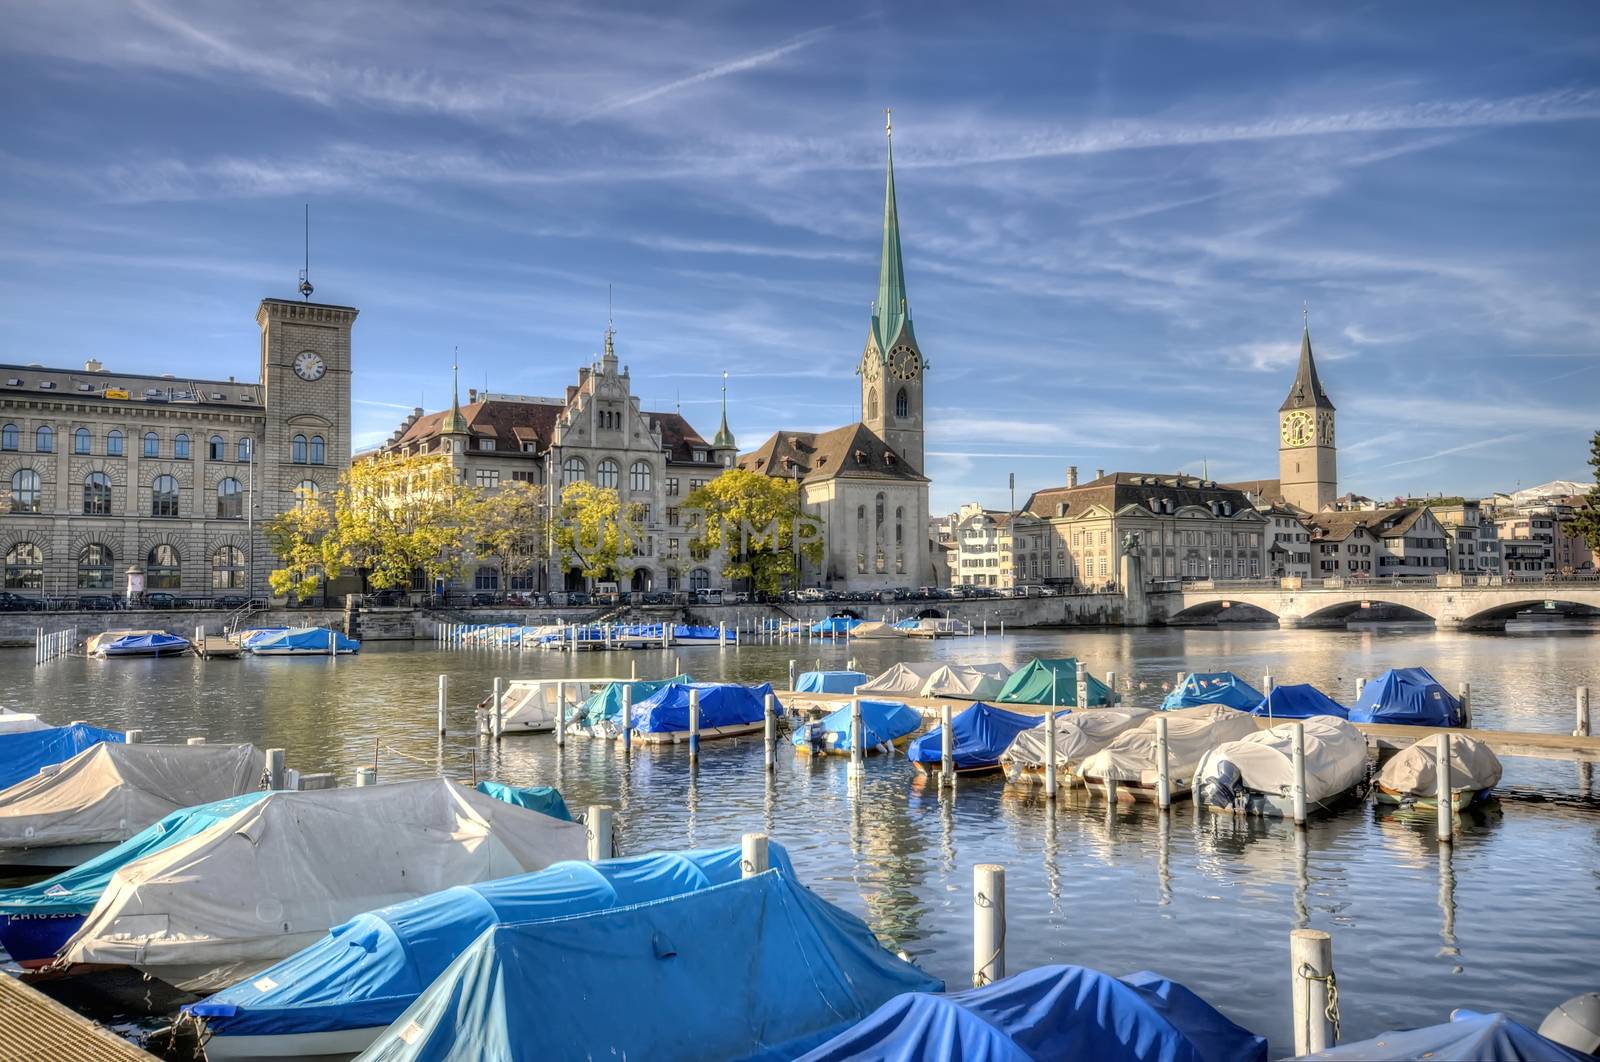 Center of Zurich, Switzerland by anderm